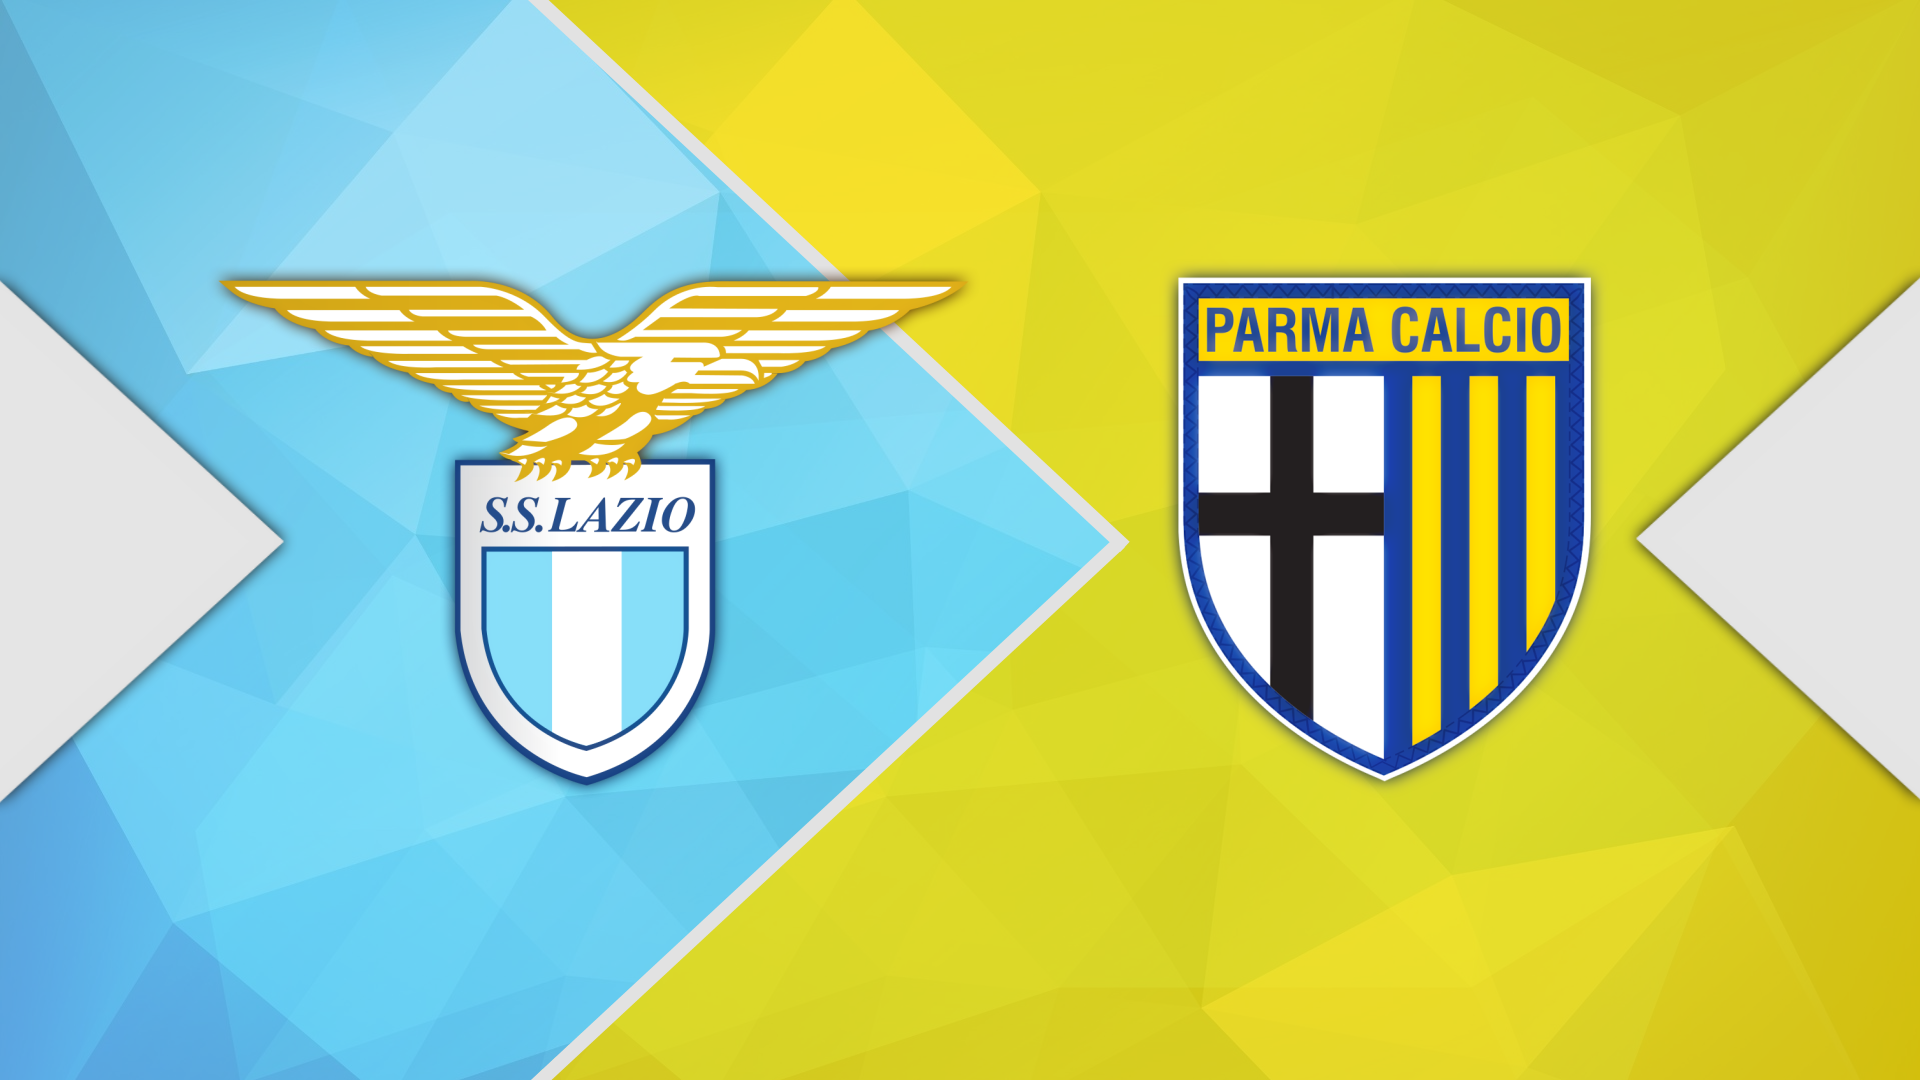 Lazio vs parma